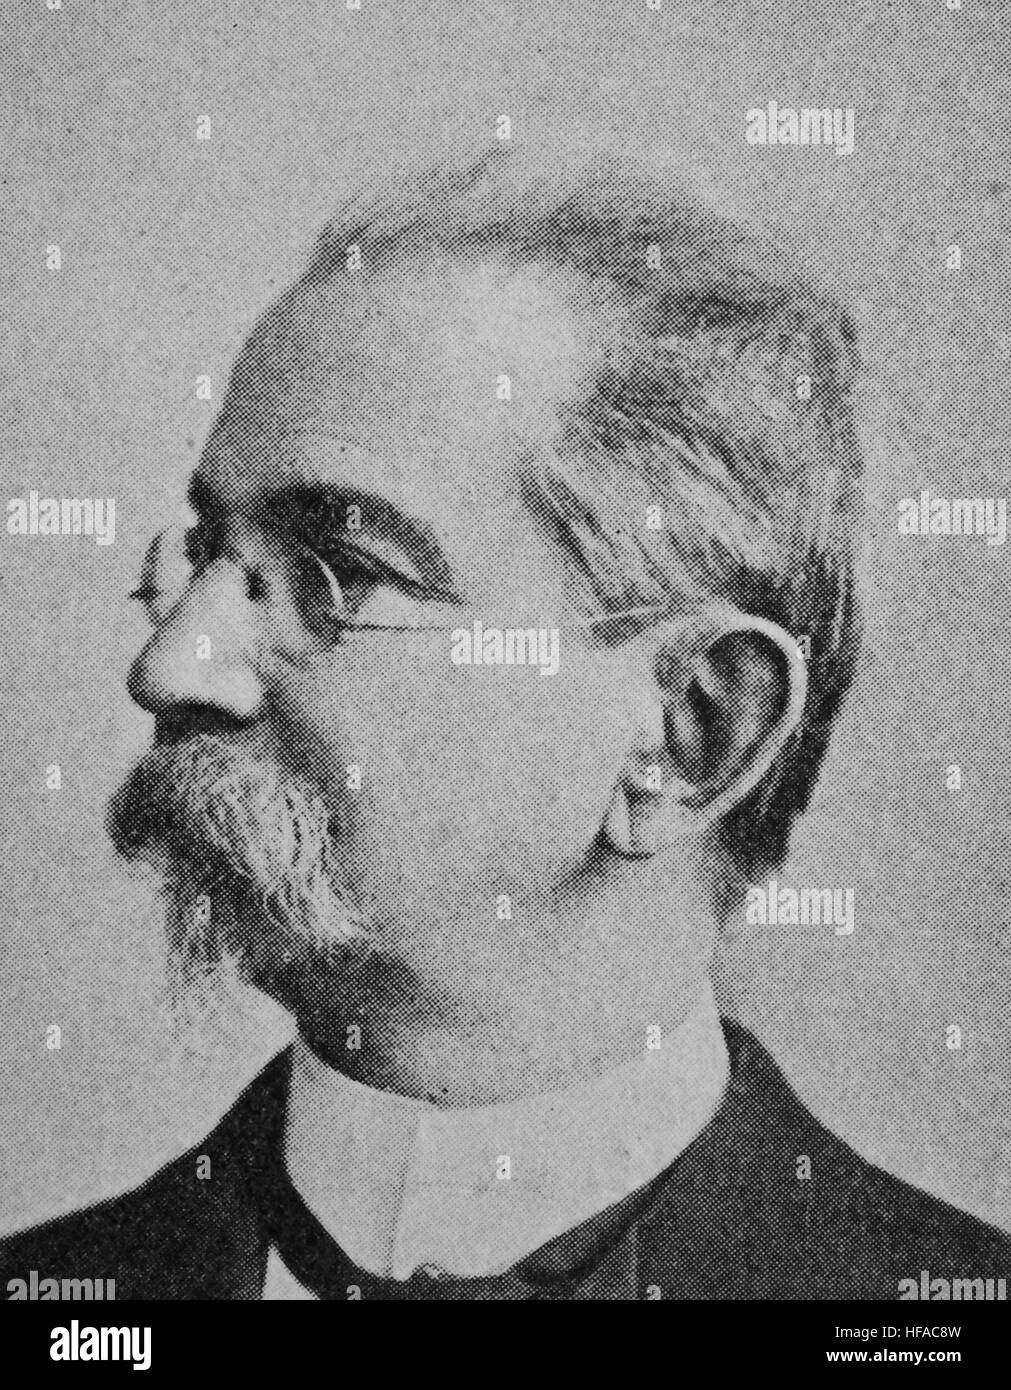 Georg Mayr, en 1841-1925, était un économiste et statisticien, reproduction photo de l'année 1895, l'amélioration numérique Banque D'Images